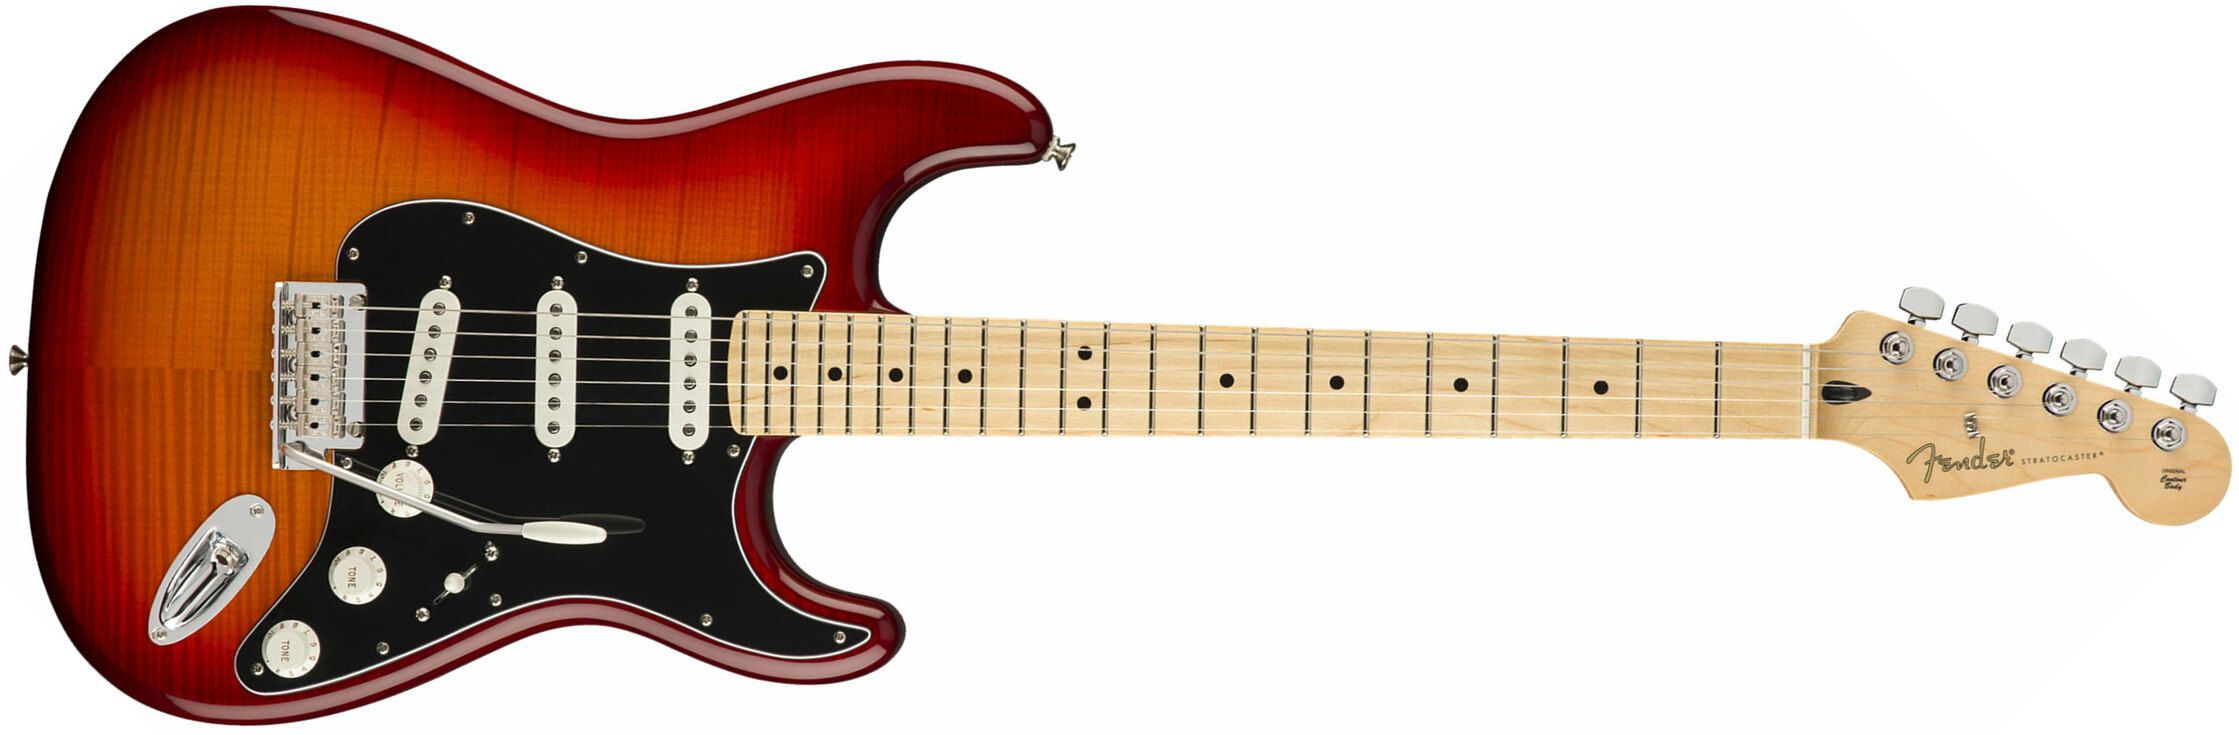 Fender Strat Player Plus Top Mex 3s Mn - Aged Cherry Burst - Elektrische gitaar in Str-vorm - Main picture